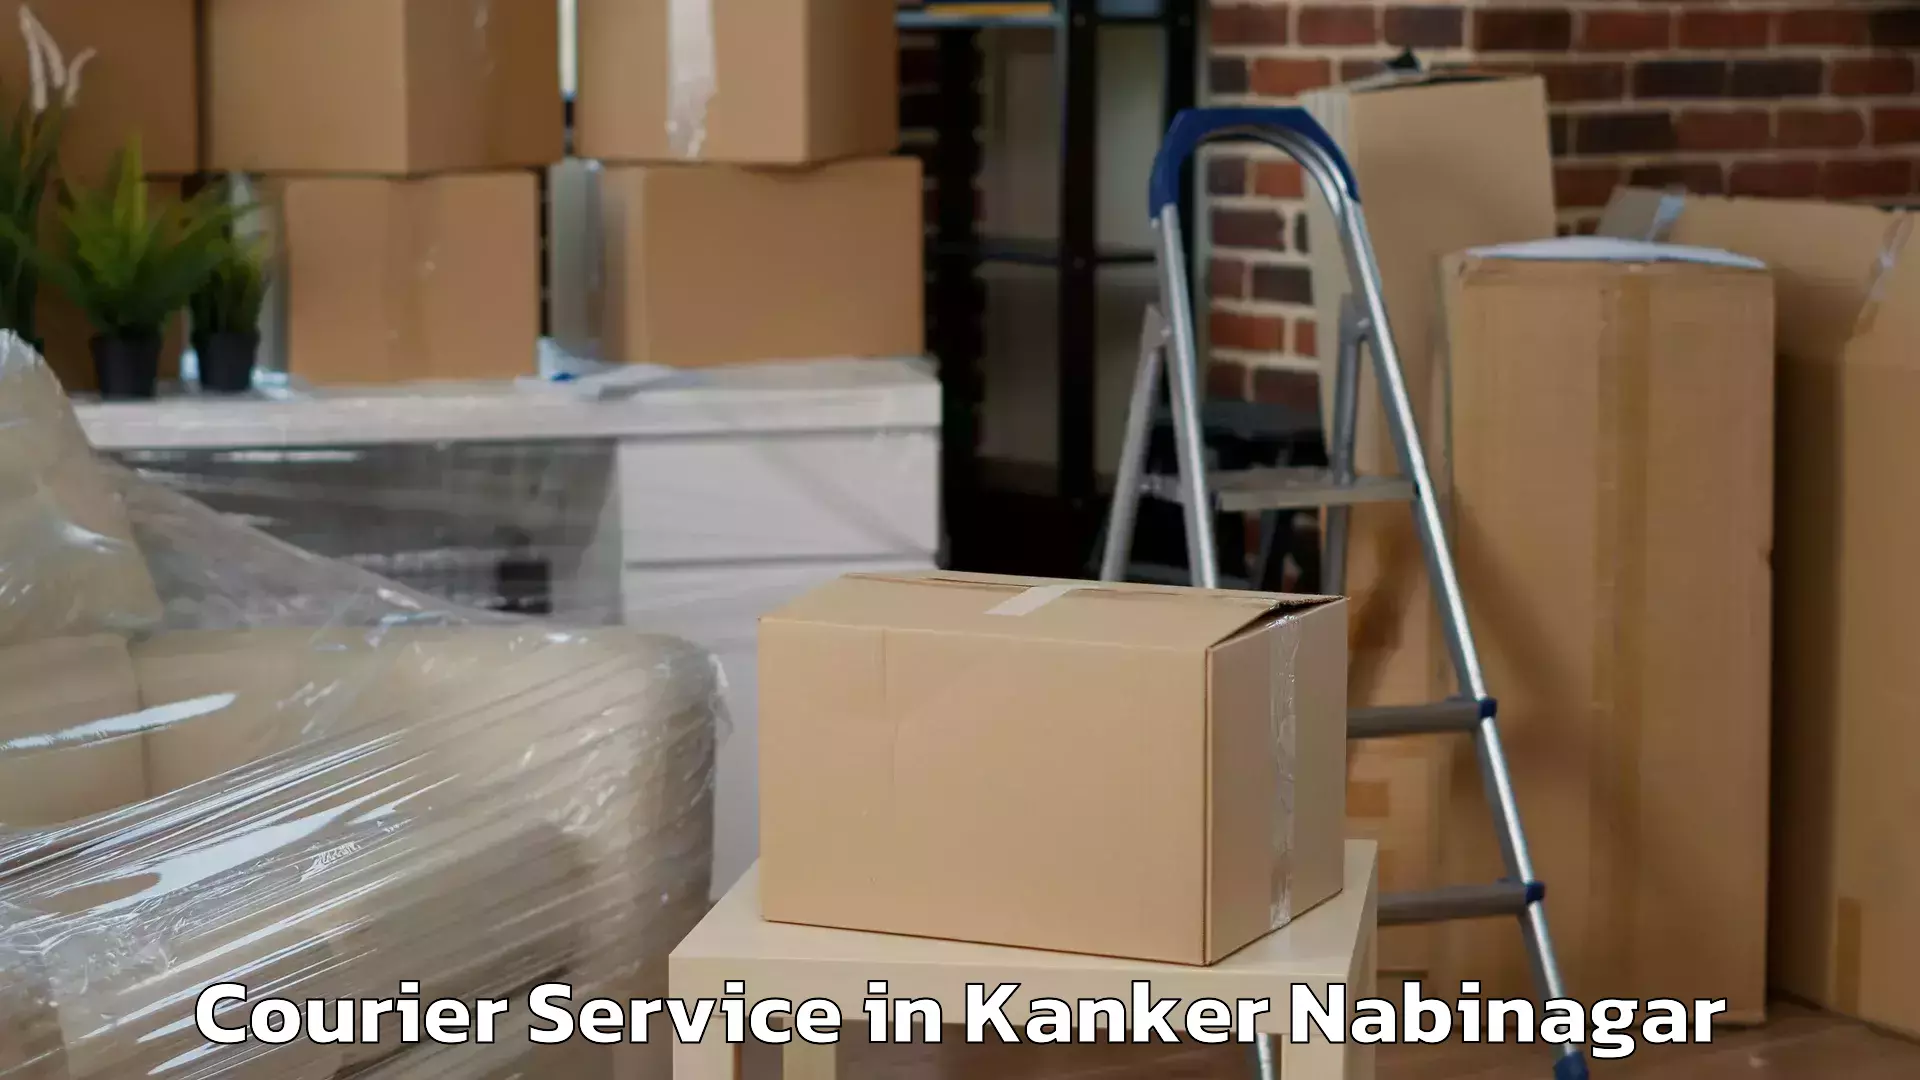 Express delivery network in Kanker Nabinagar